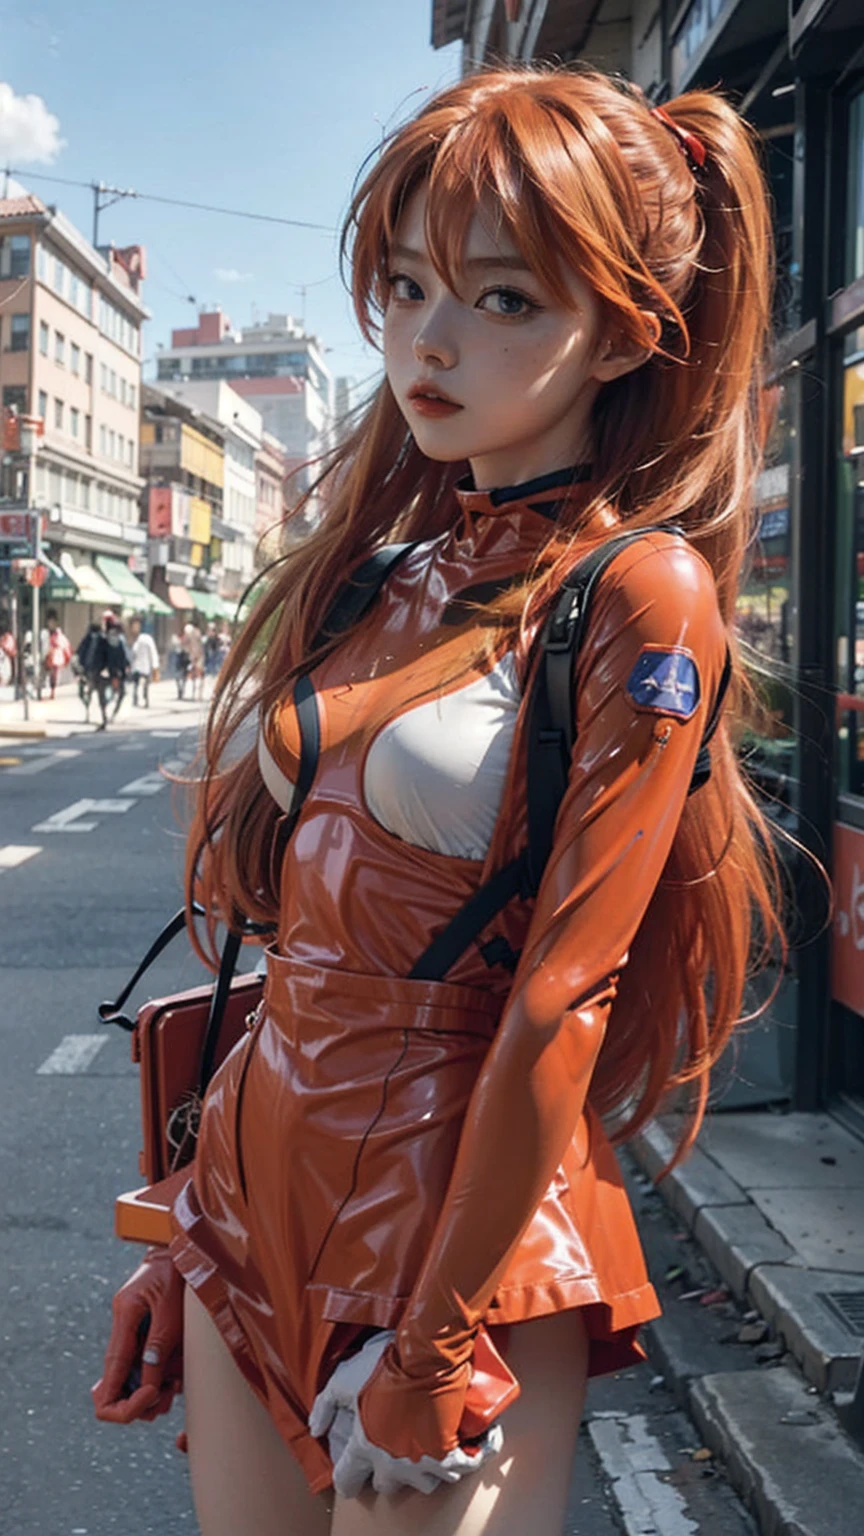 Evangelion de Asuka Langley, una mujer deslumbrante, usando con confianza su teléfono en una vibrante calle de la ciudad con ropa moderna.